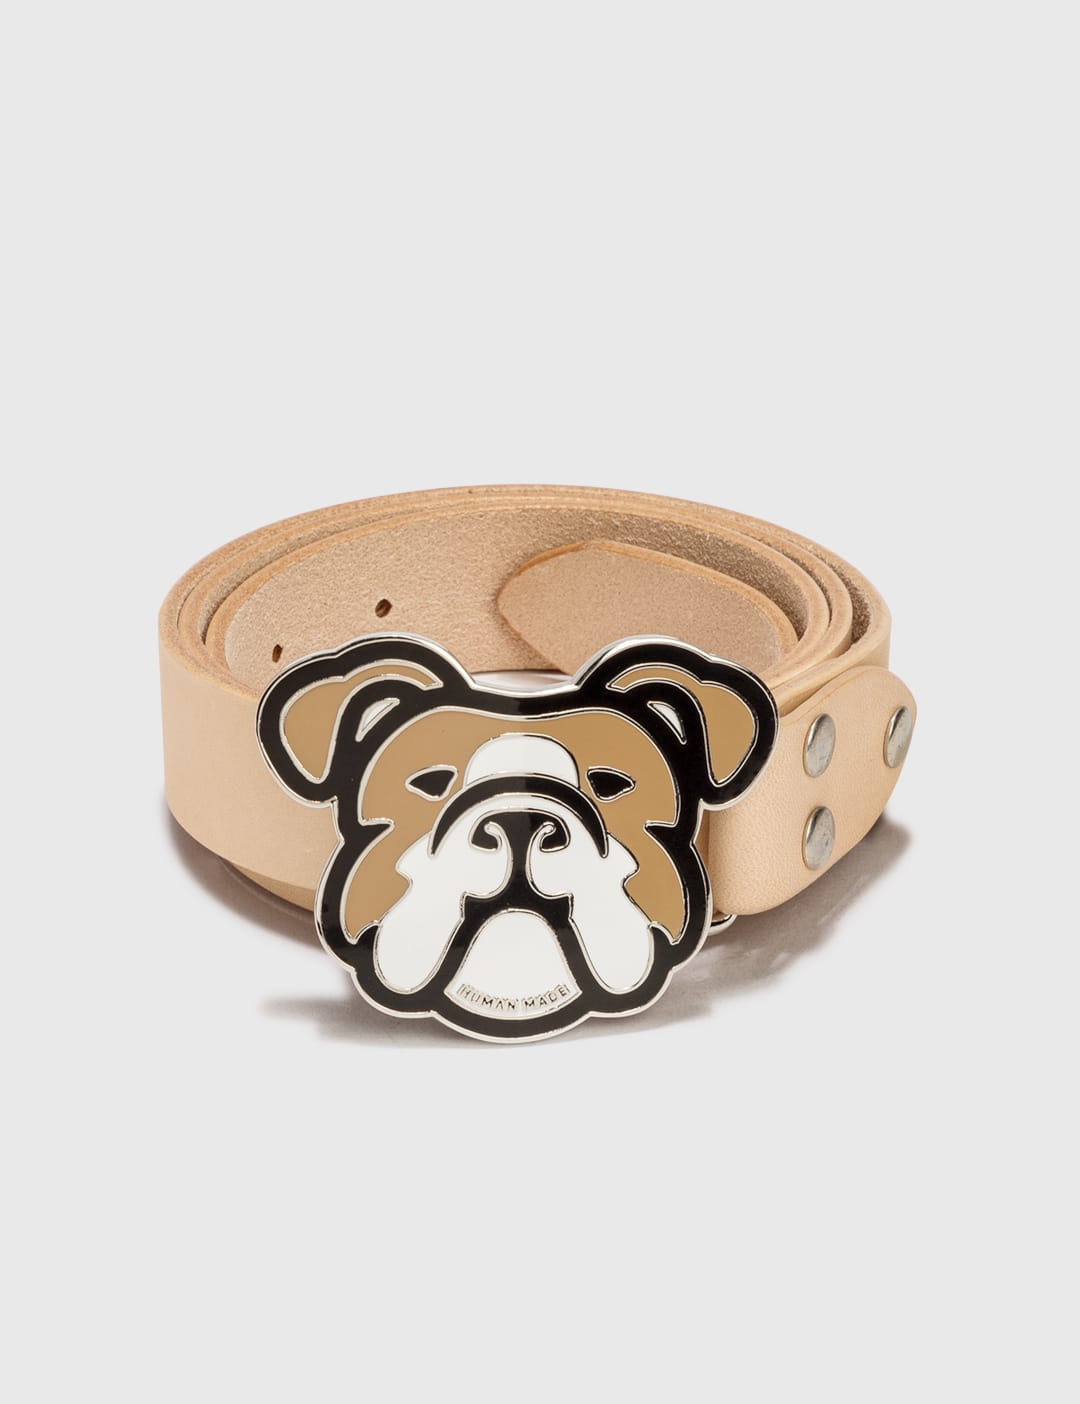 メンズファッション 財布、帽子、ファッション小物 Human Made - Bulldog Leather Belt | HBX - Globally Curated Fashion 